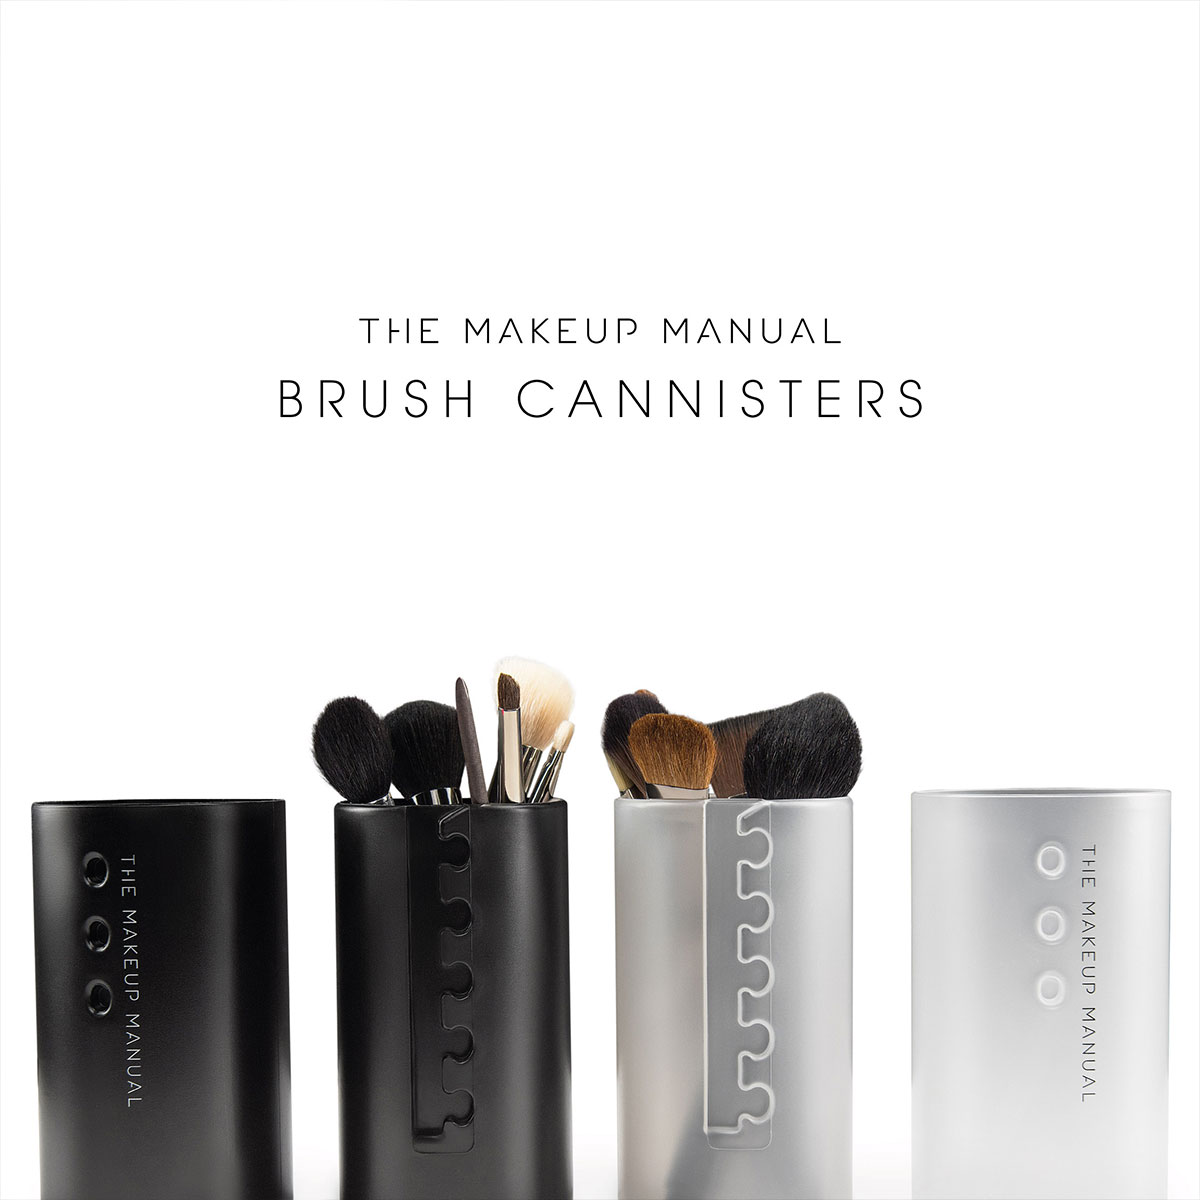 The Makeup Manual